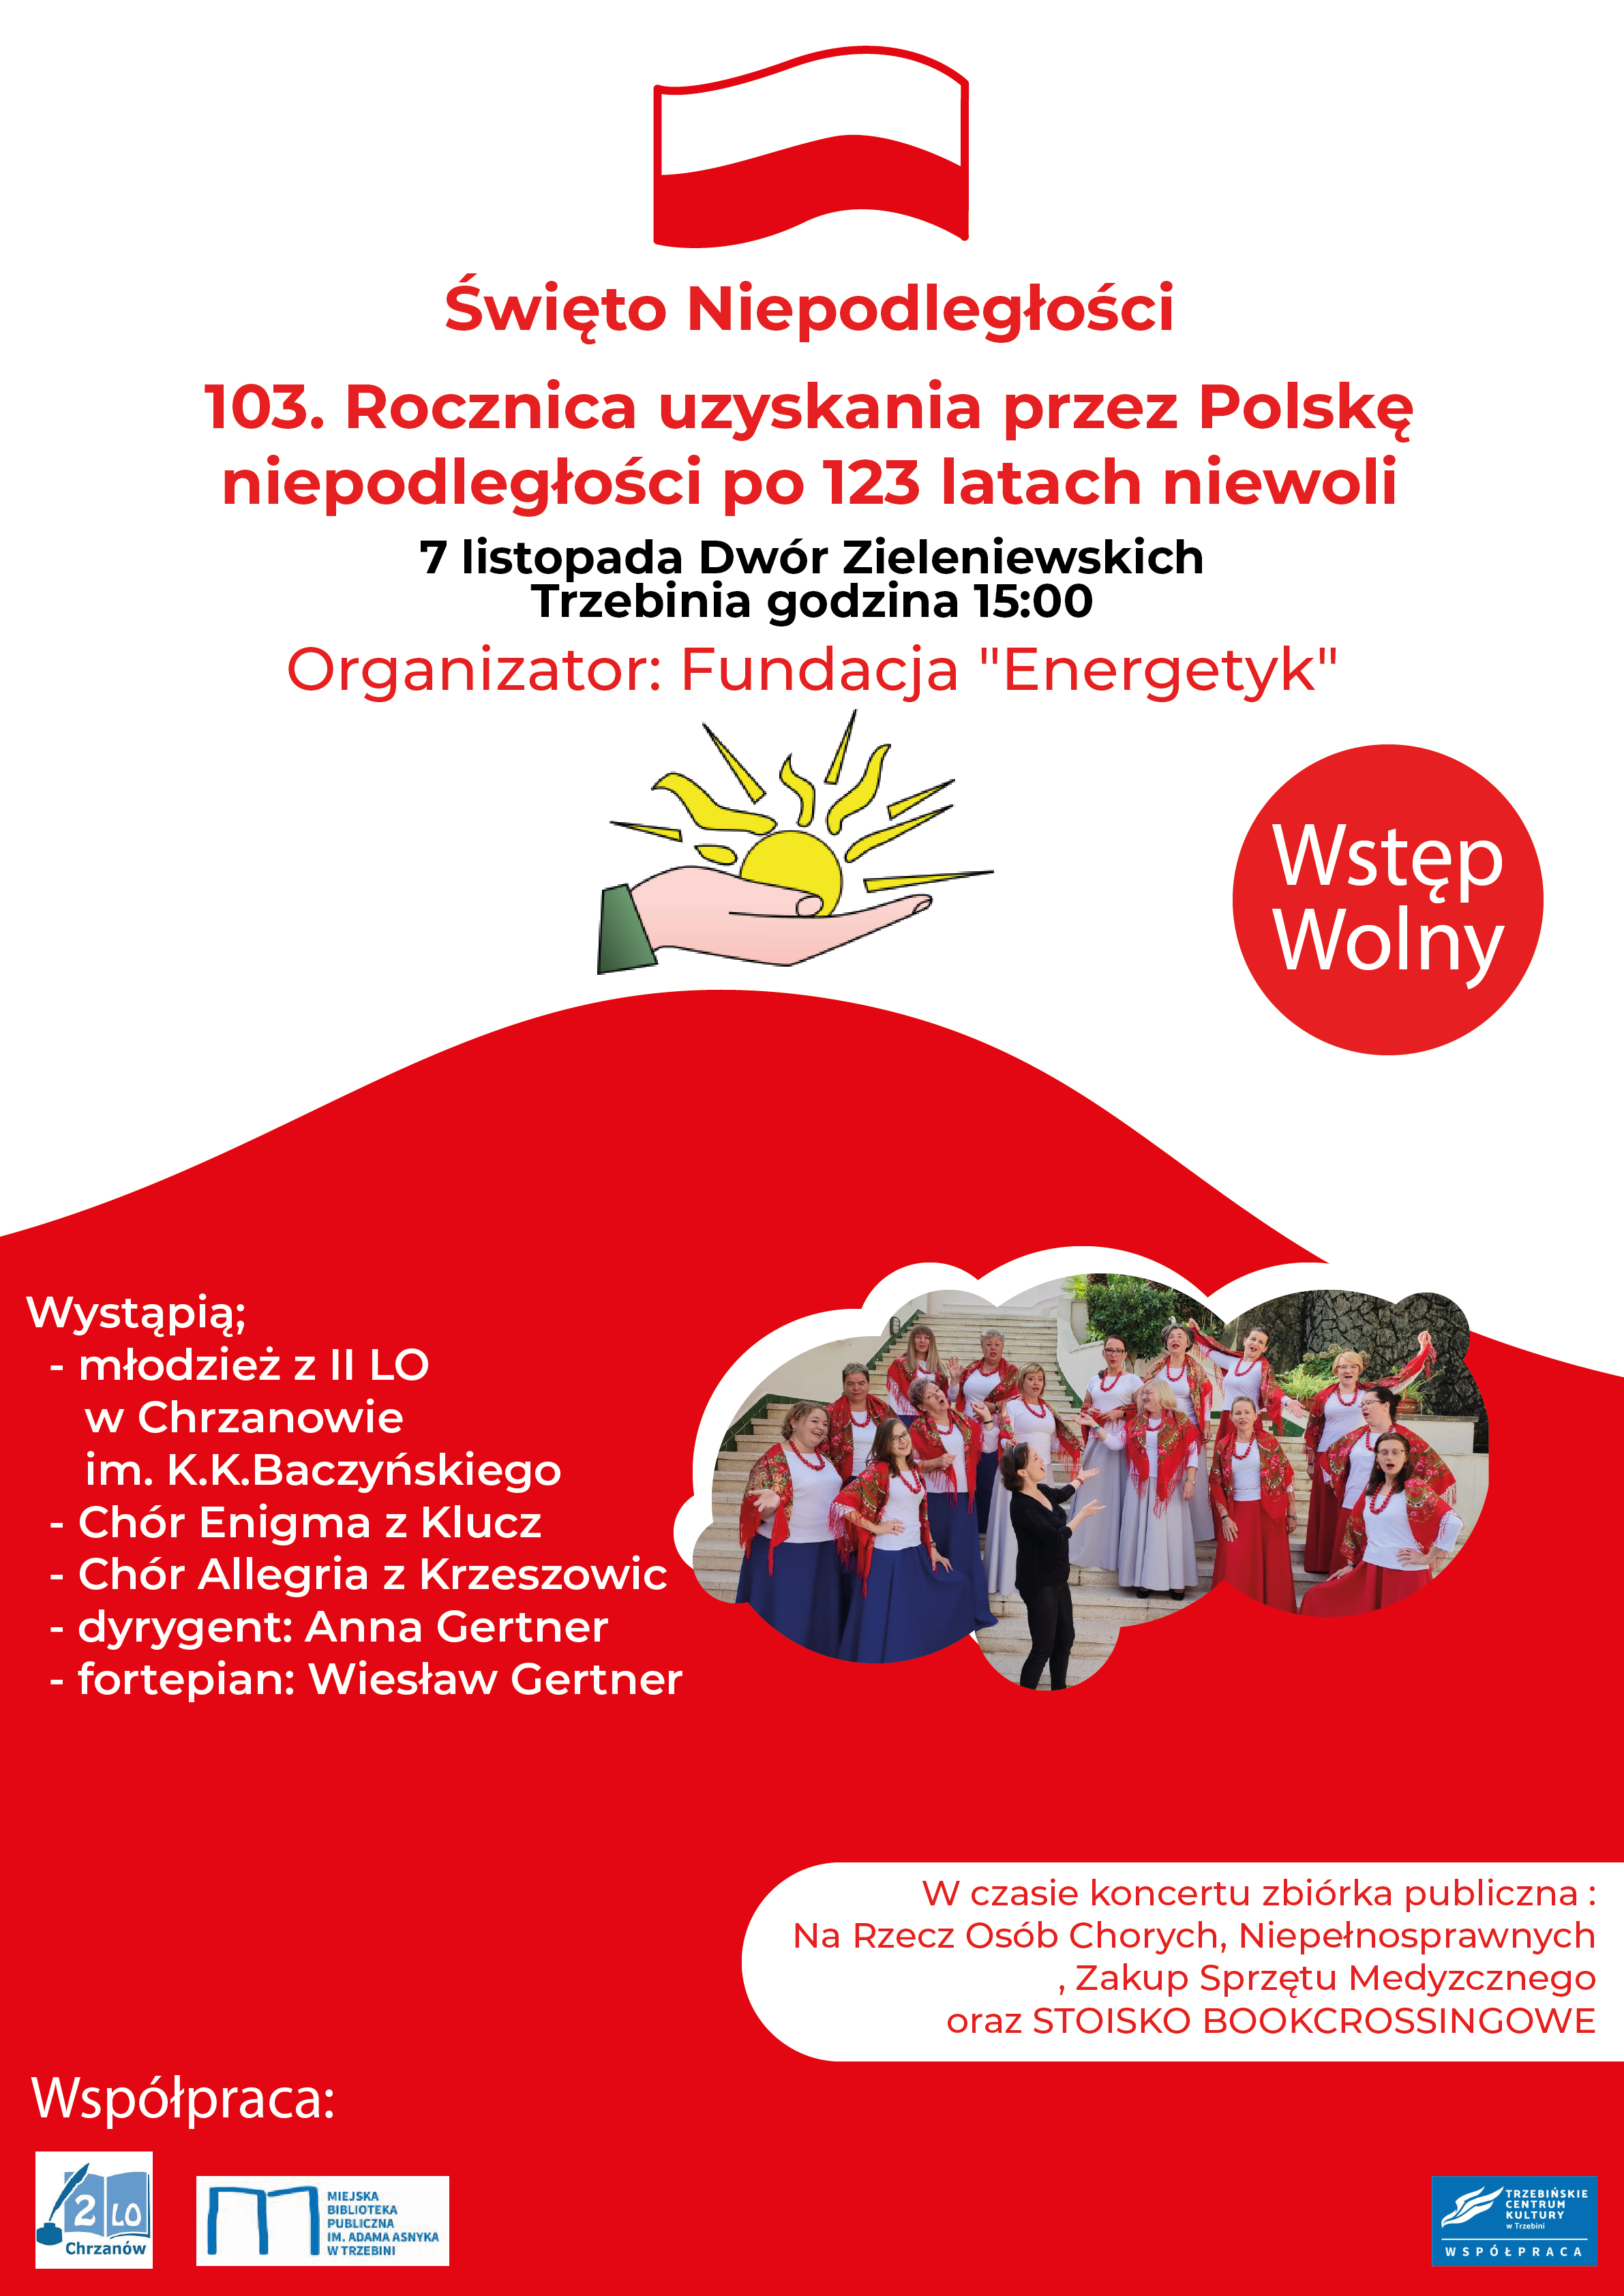 Święto Niepodległości 103 Plakat Fundacja EnergetykV134x